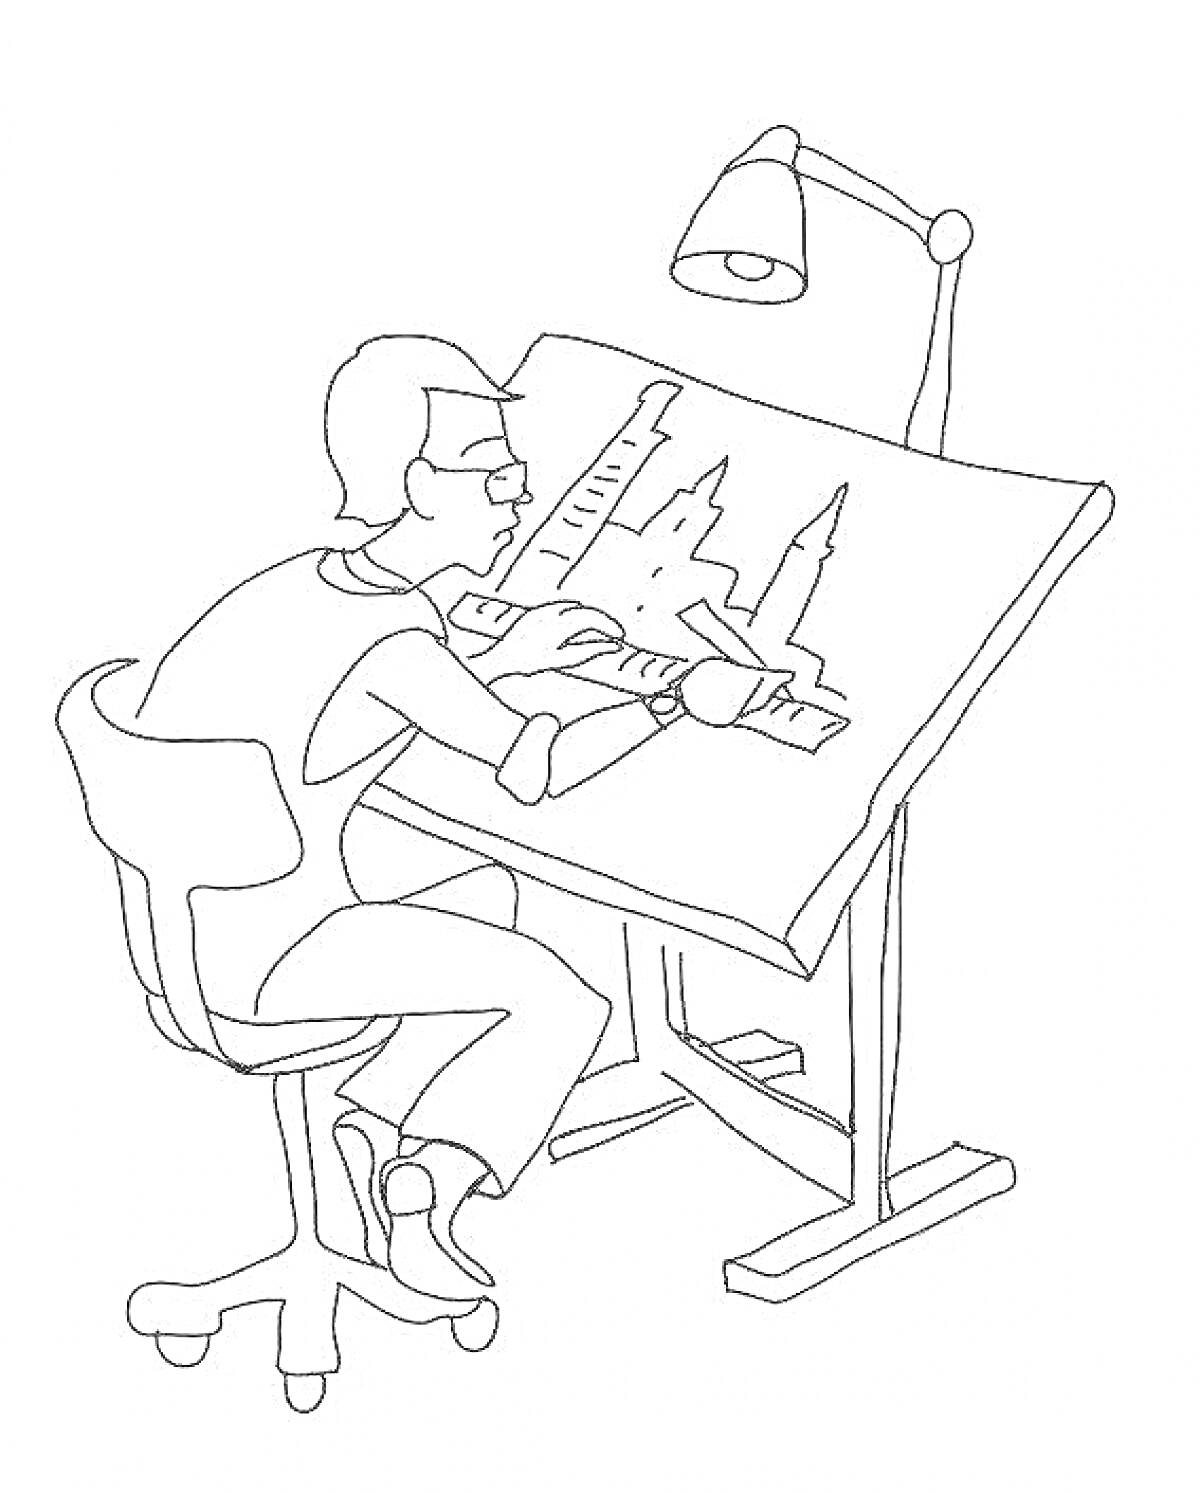 Раскраска Человек за рабочим столом с чертёжной доской, лампой и линейками